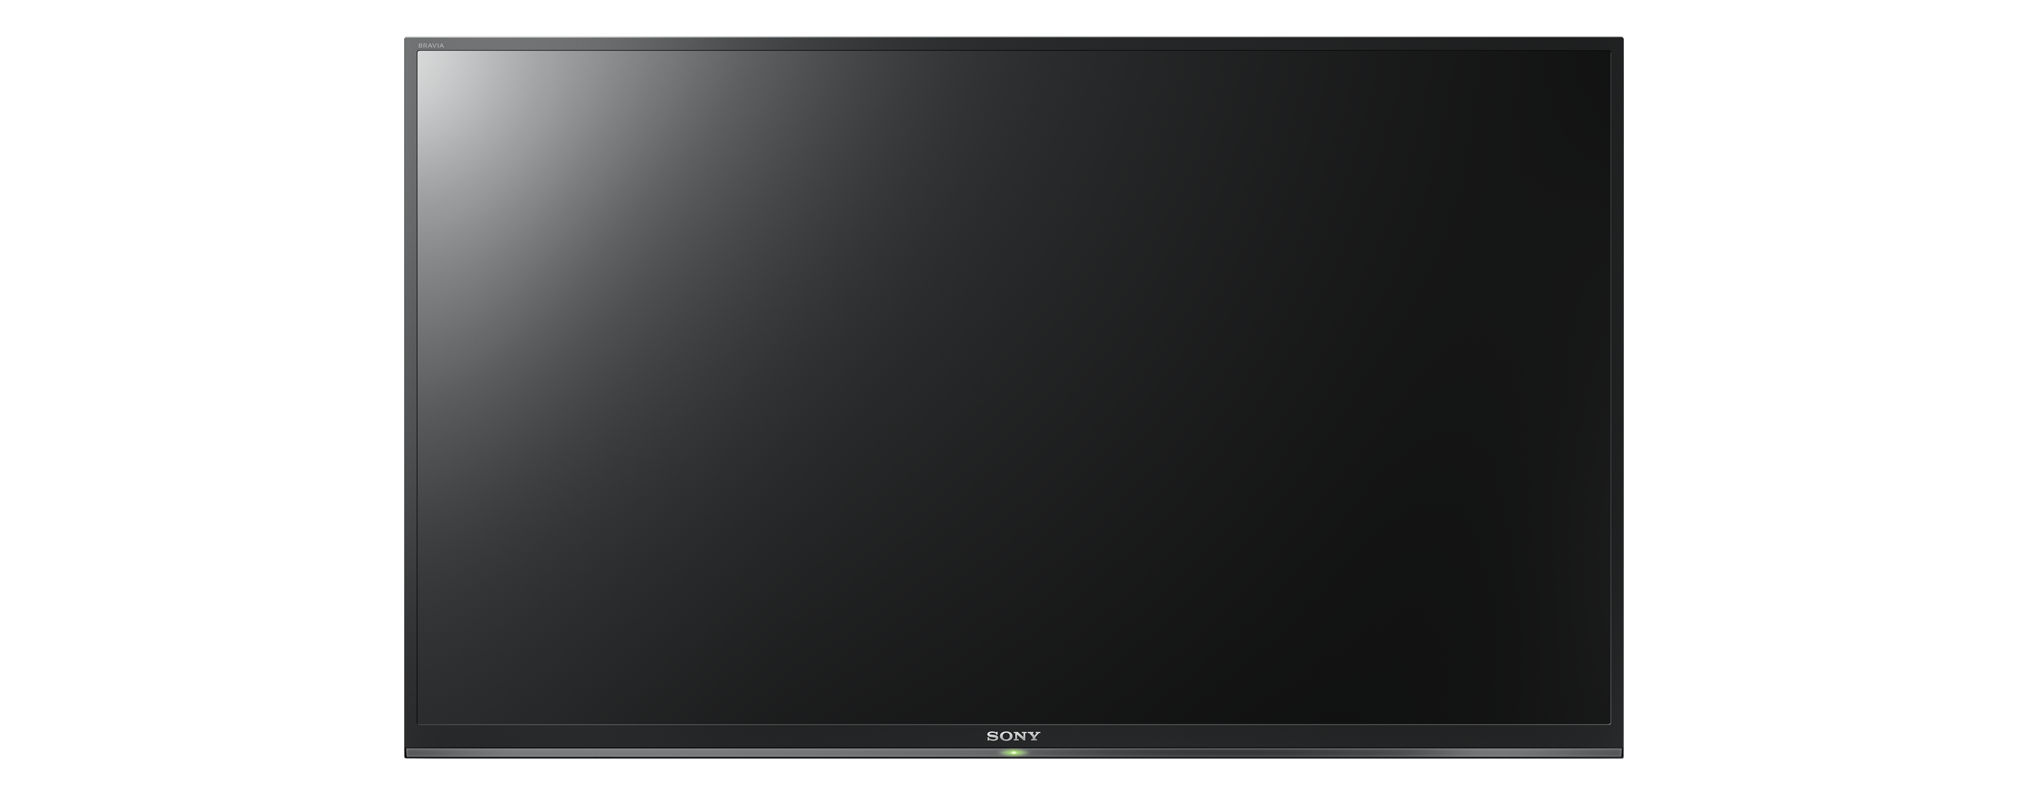 SONY / Linux) TV LED KDL-32W6605 (Flat, TV, SMART Zoll HD-ready, 32 80 cm,